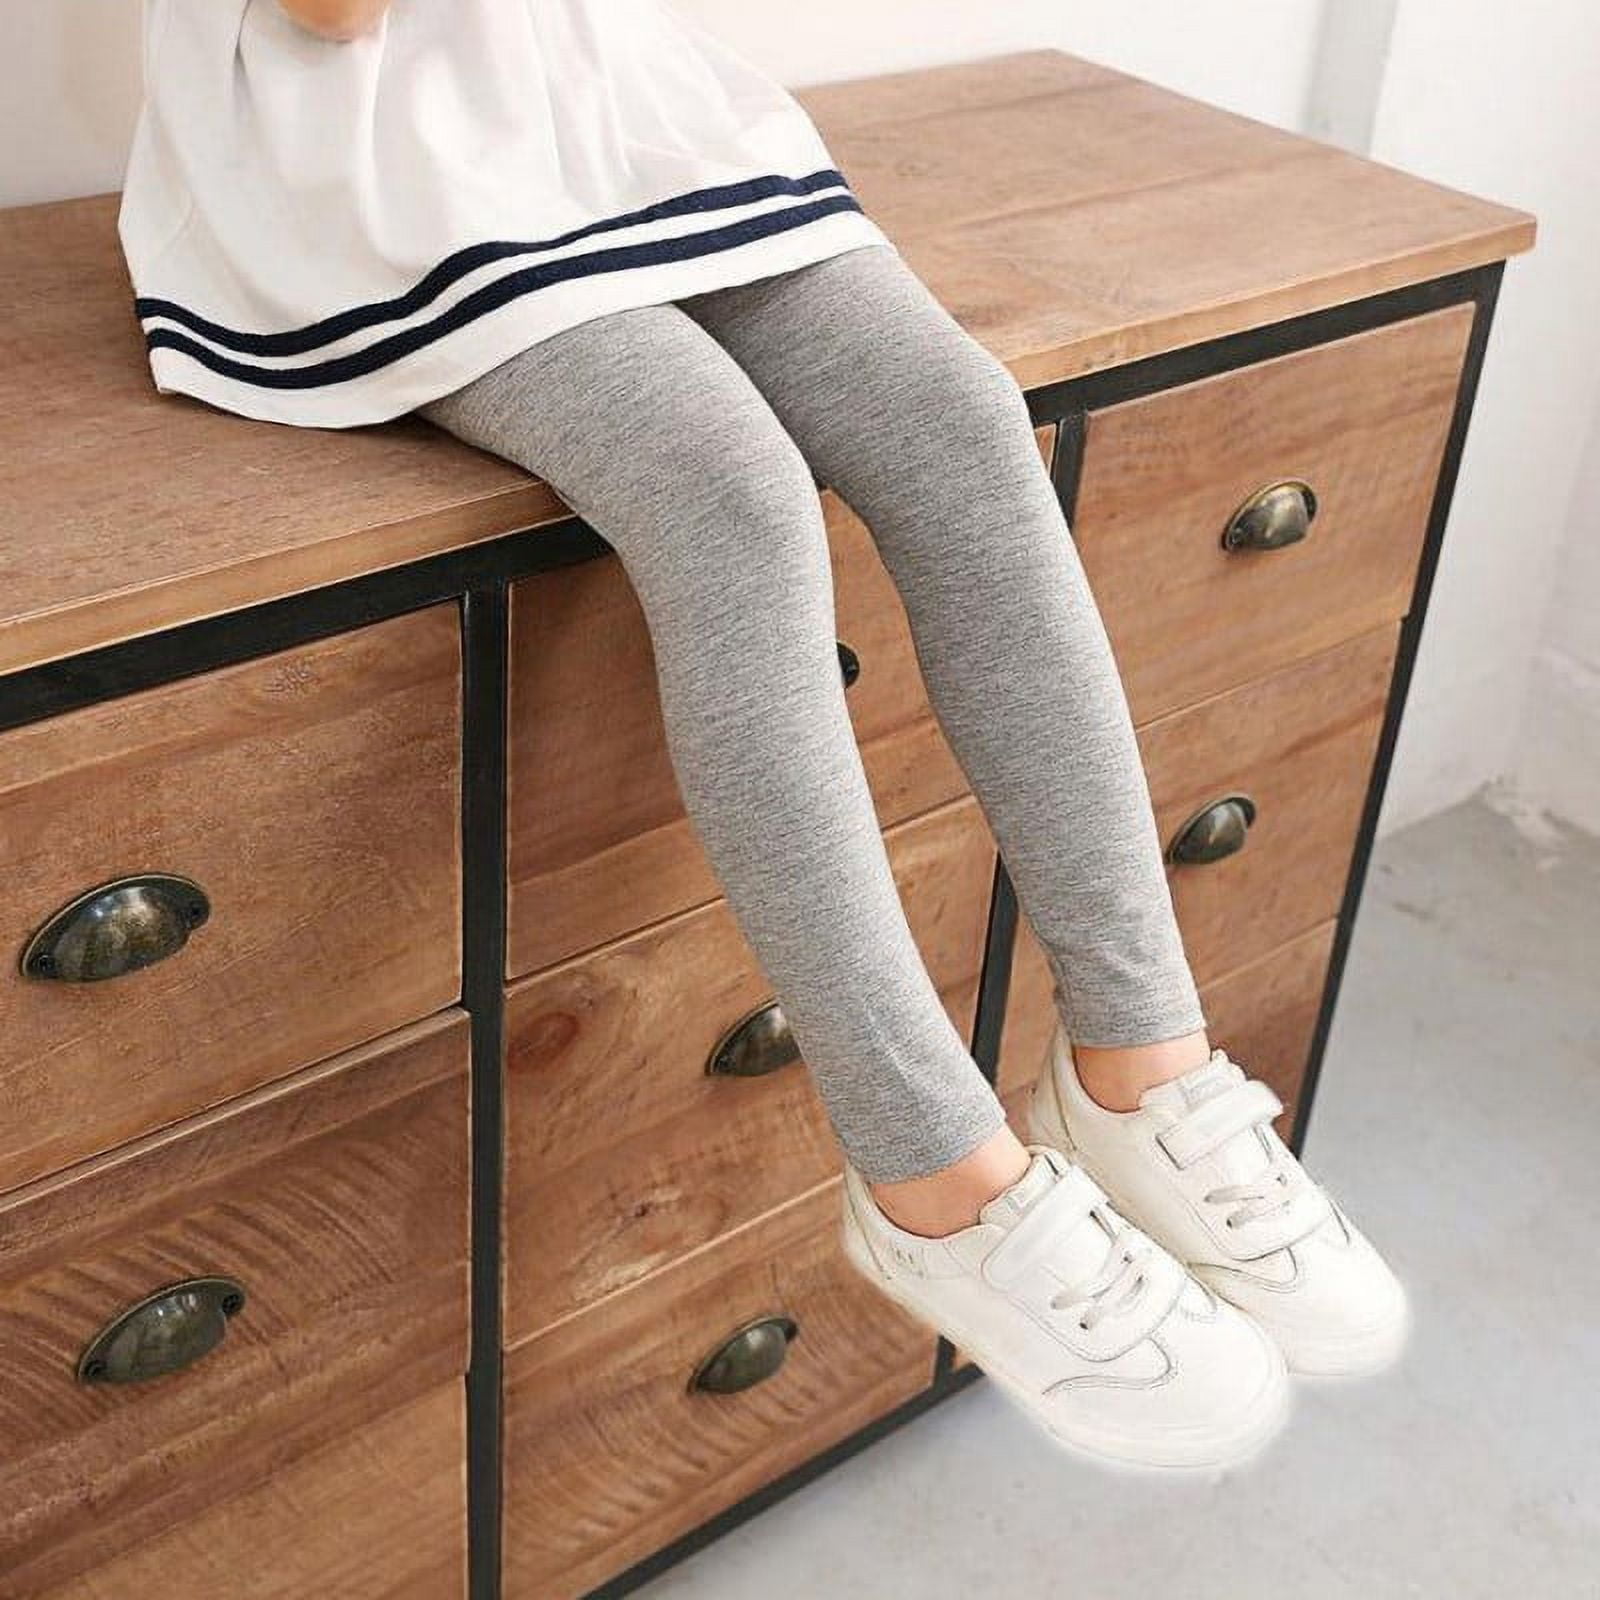 Girls Leggings Cotton Ankle Length Leggings Comfortable Stretchy Soft  Leggings School Uniform Pants for Girls 